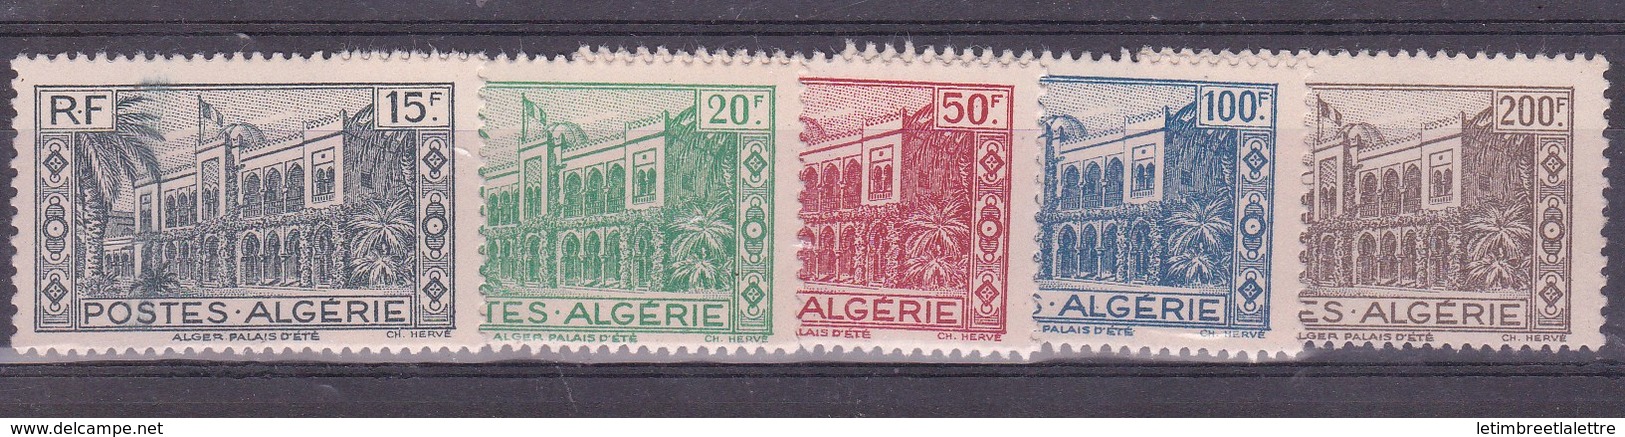 ⭐ Algérie - YT N° 200 à 204 ** - Neuf Sans Charnière - 1944 ⭐ - Unused Stamps